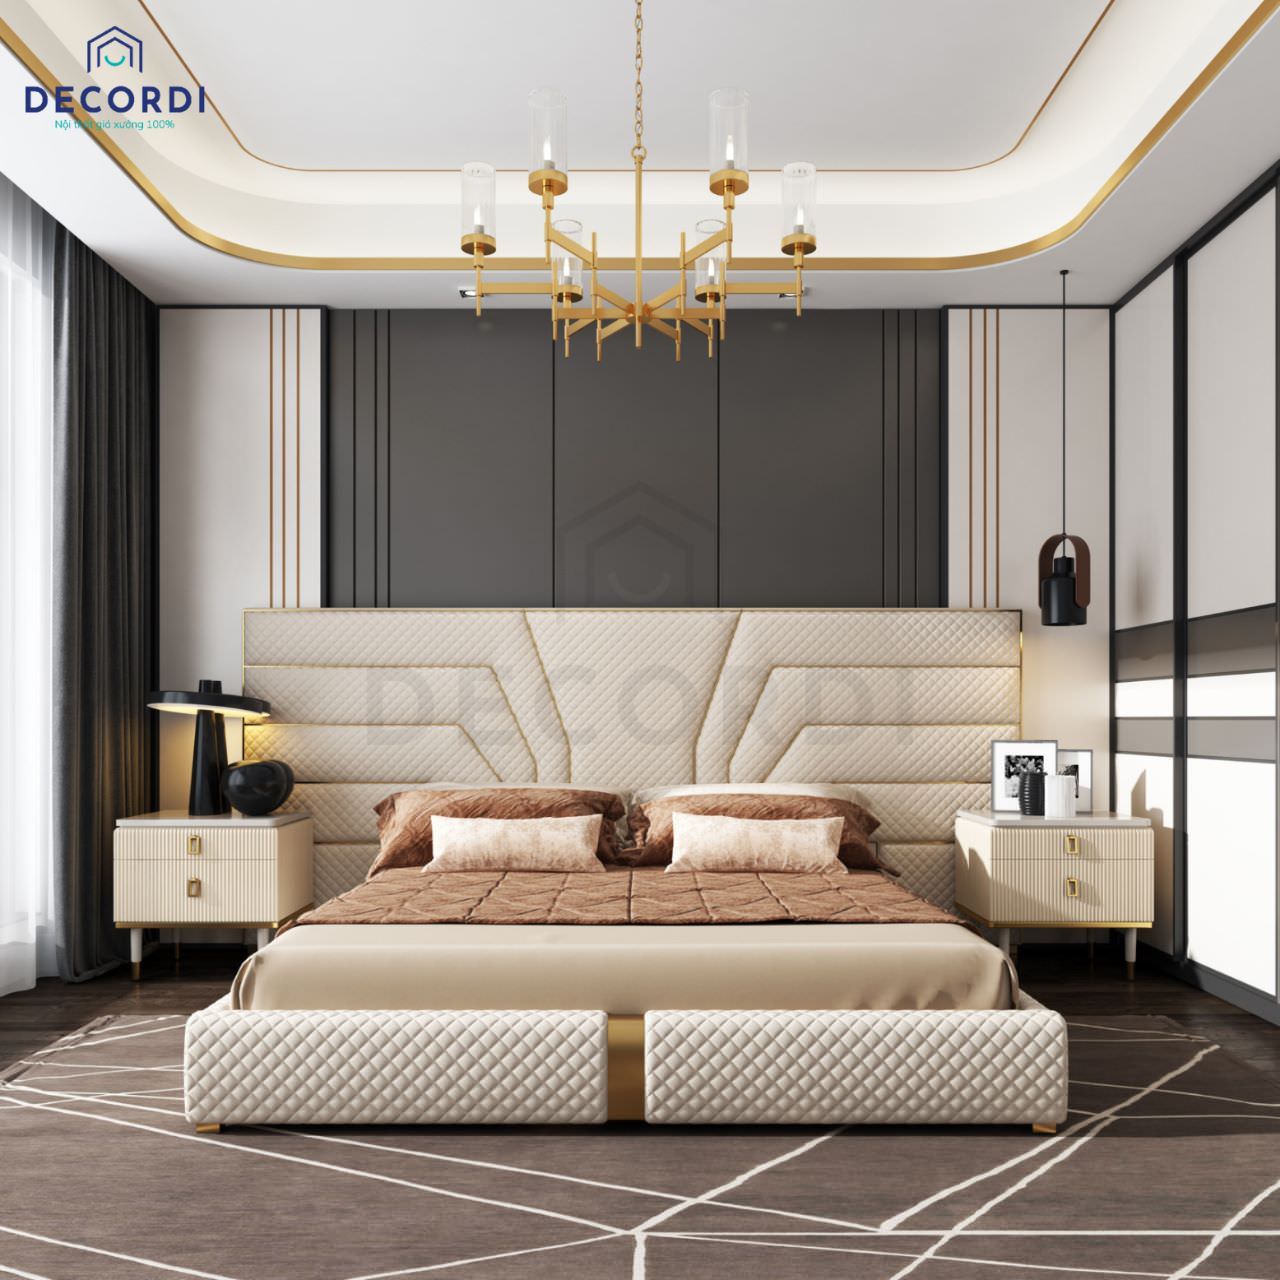 Thiết kế phòng ngủ phong cách luxury nhưng không cầu kỳ phức tạp, nổi bật với vách ốp có đường chỉ vàng đẹp mắt